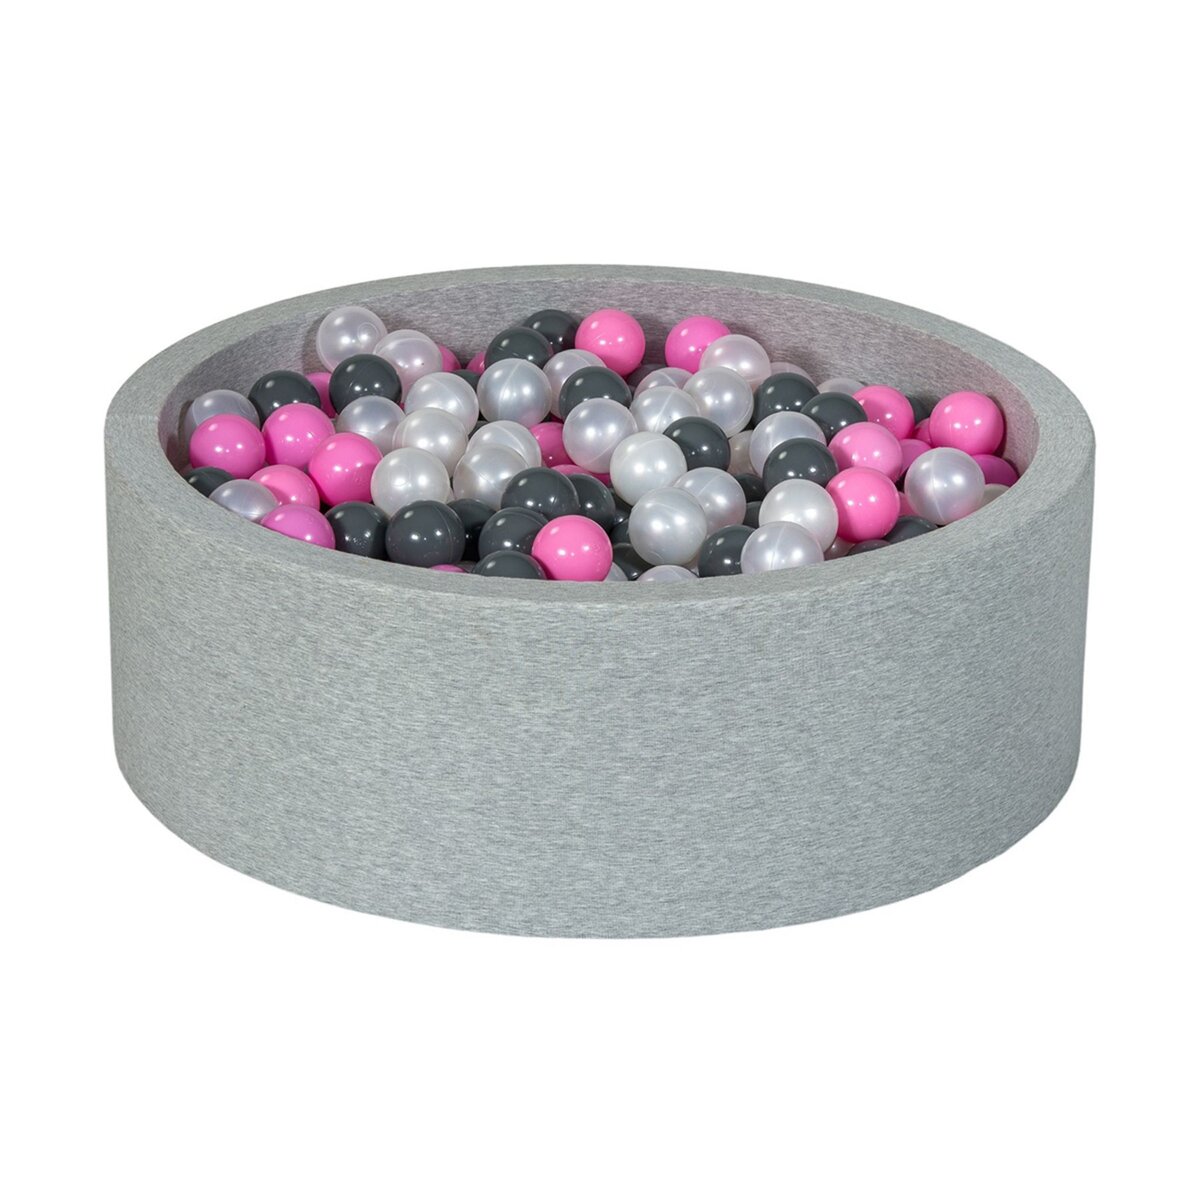  Piscine à balles Aire de jeu + 450 balles perle, rose clair, gris